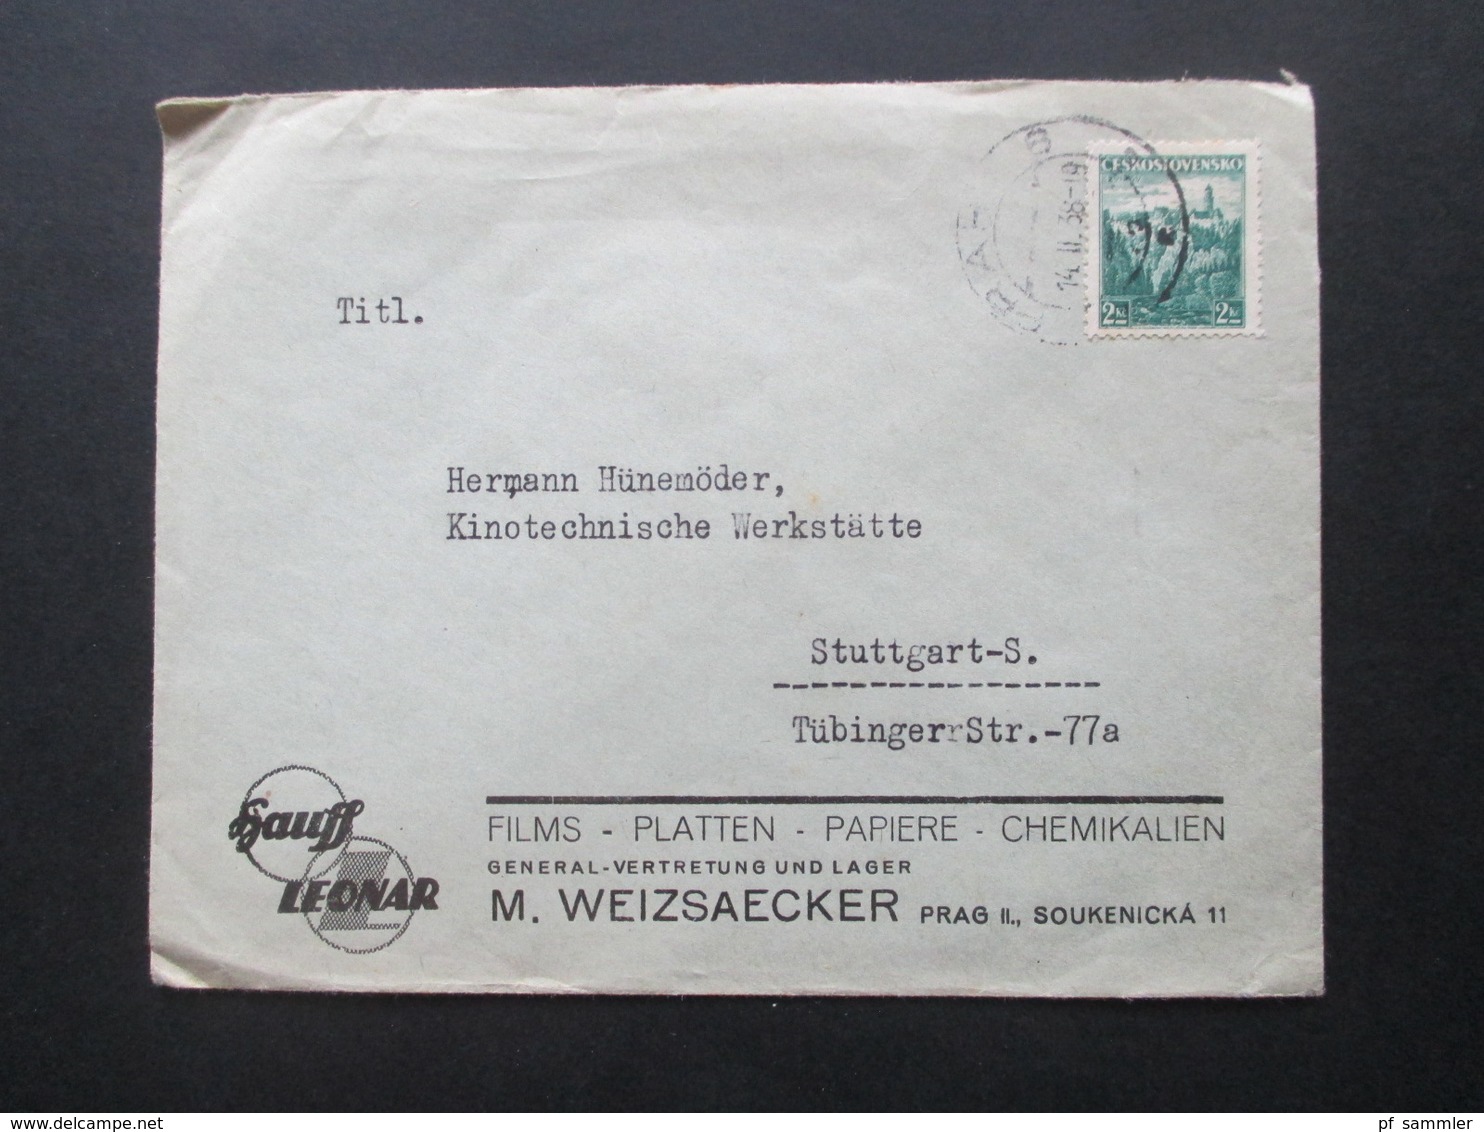 CSSR 1929-46 Belegeposten 65 Stk. Zweisprachige Stempel / Sudetenland Gebiete Firmenumschläge / Korrespondenz Bedarf - Covers & Documents